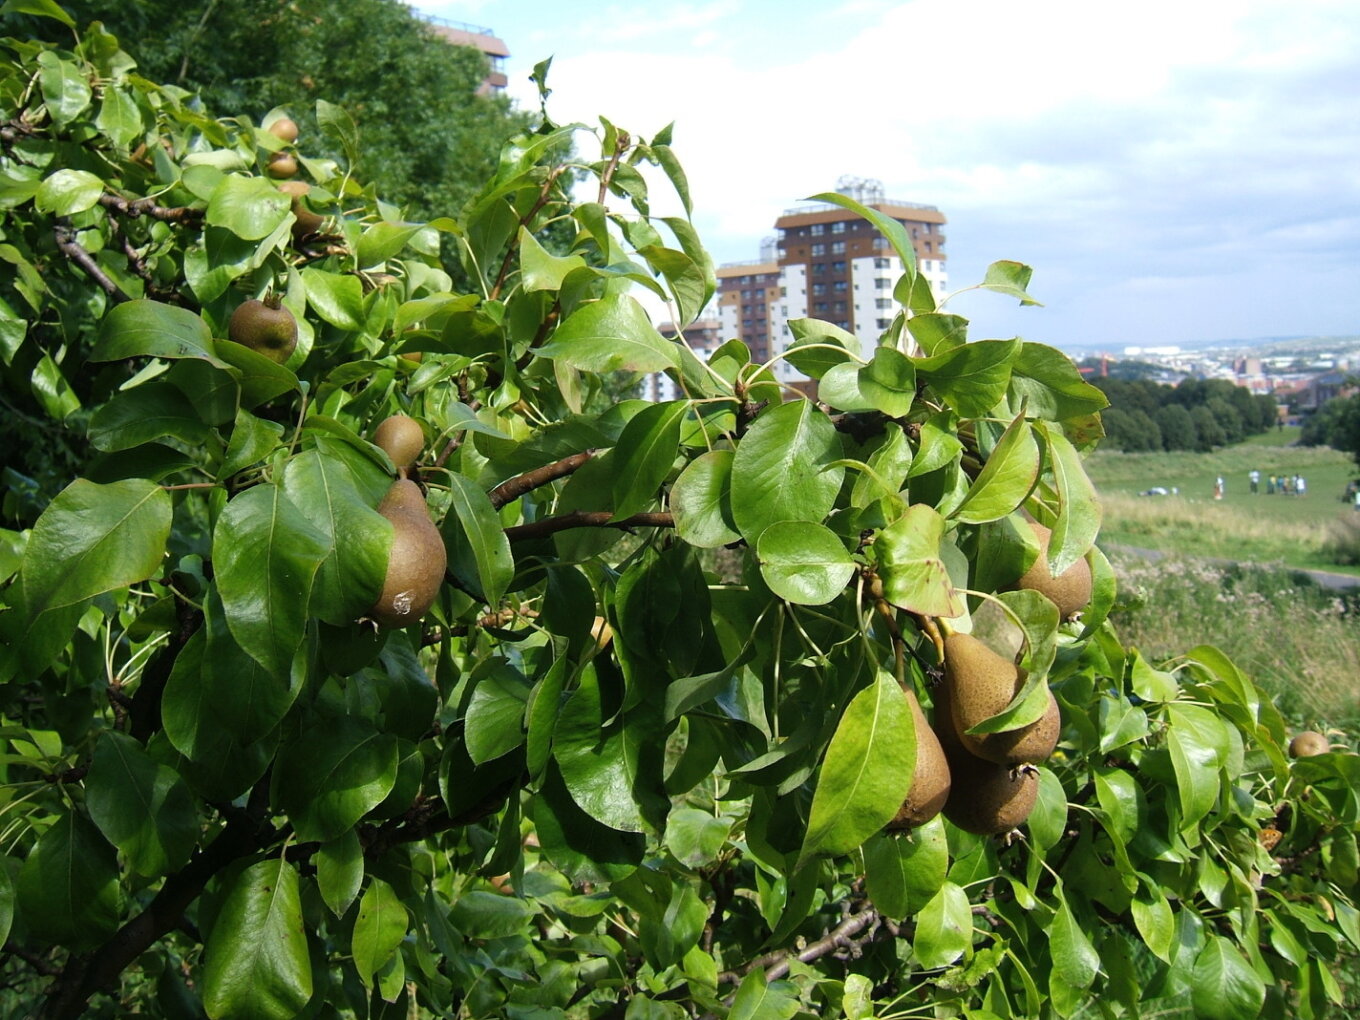 Pear treee at Ponderosa